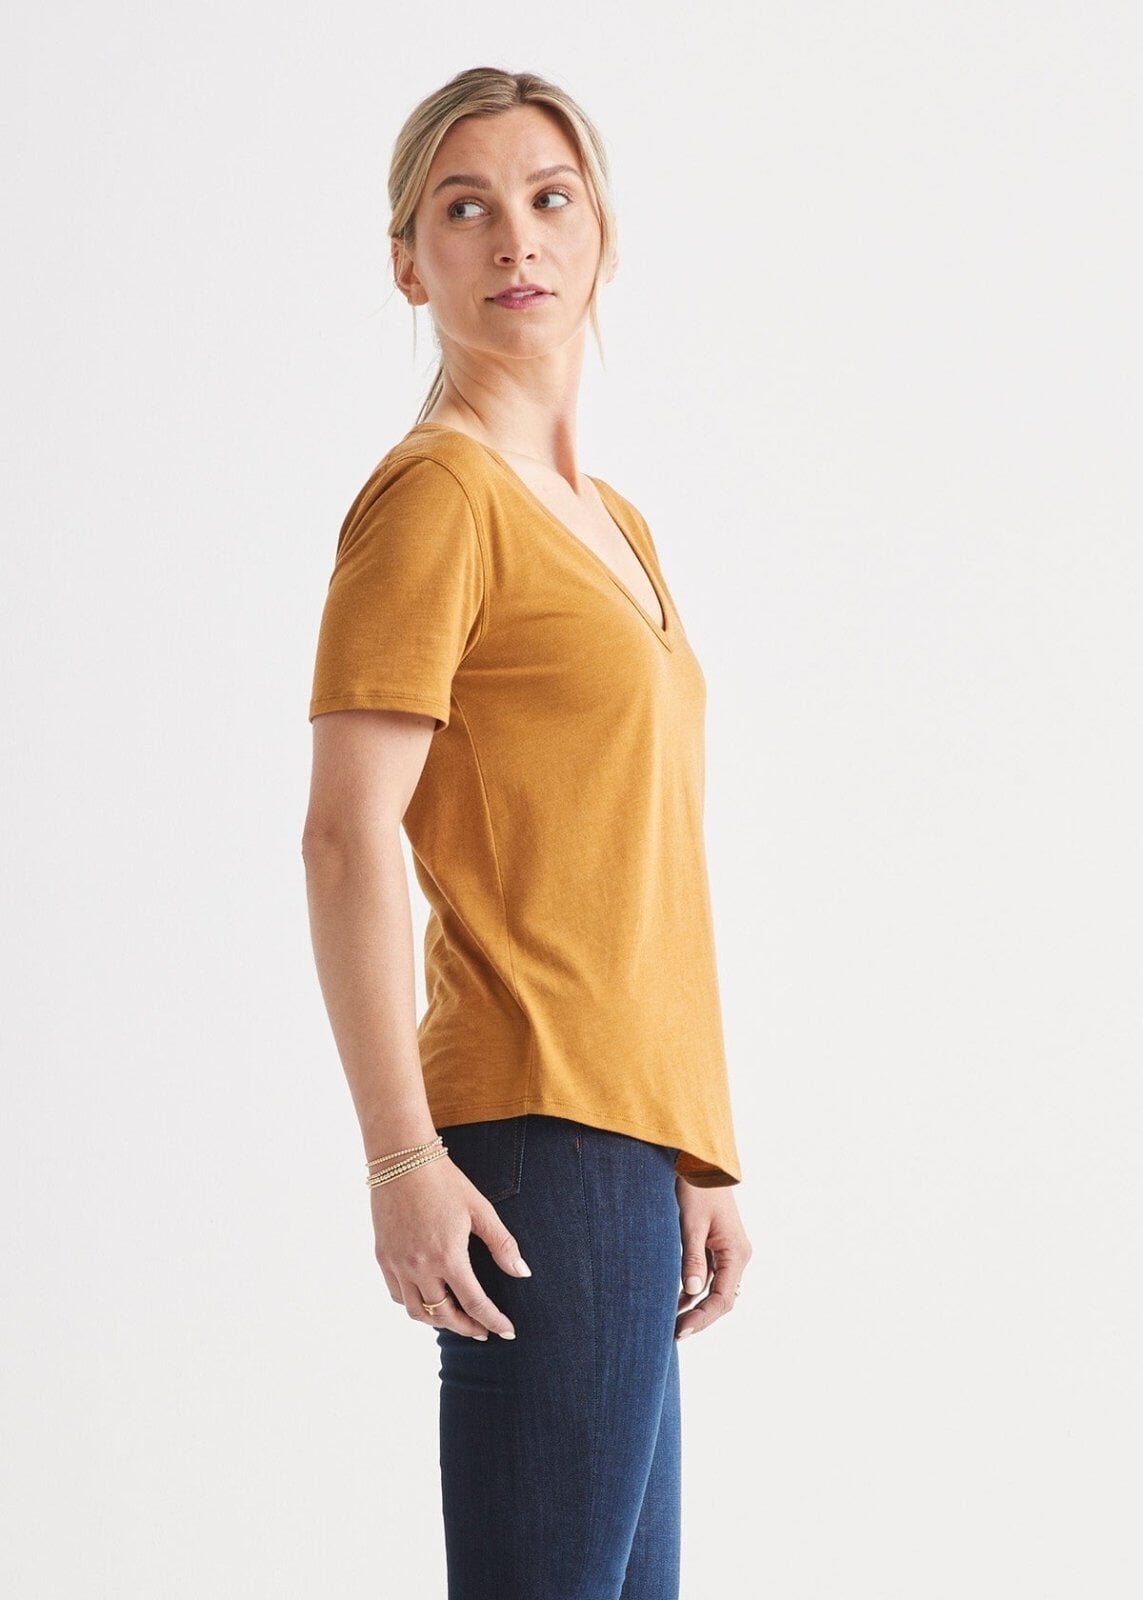 Women's Soft Lightweight Yellow V-Neck T-Shirt Side